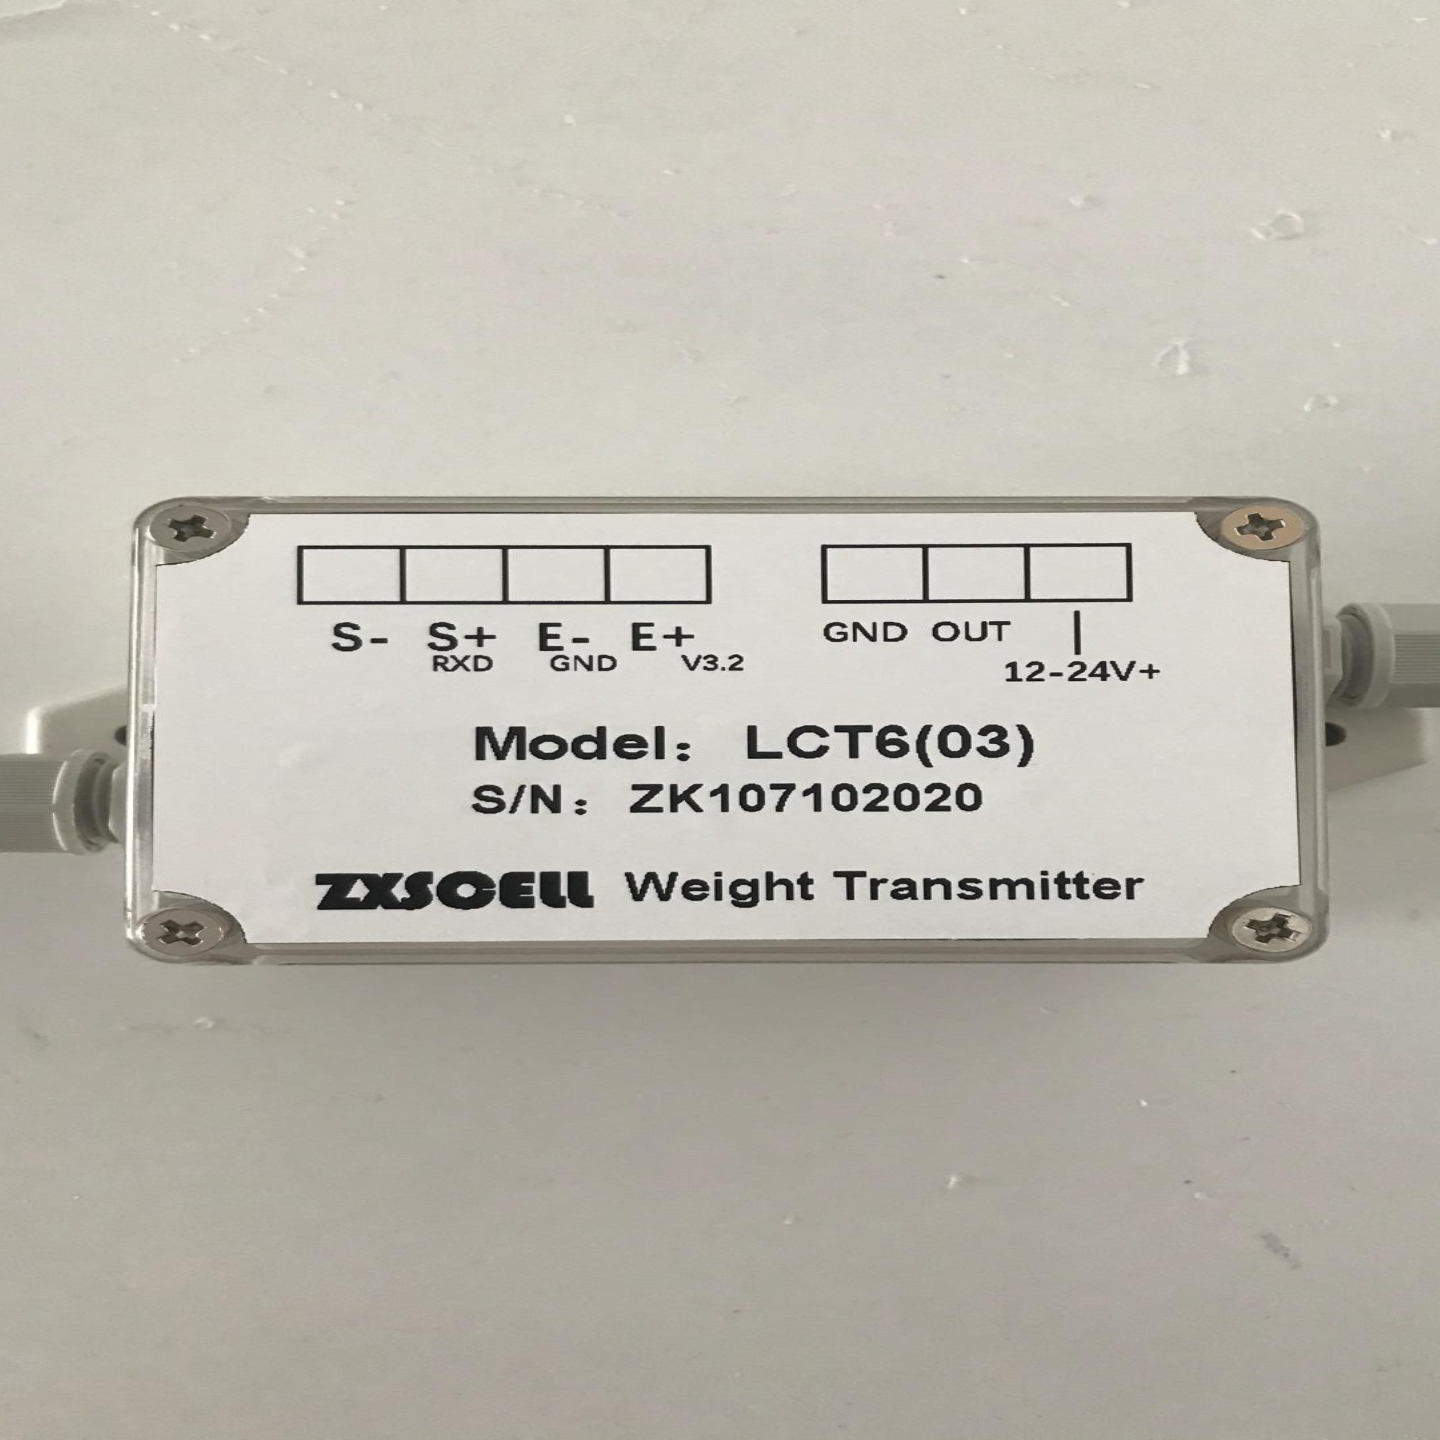 美国 中克塞尔 ZXSCELL 称重变送器 LCT6(03) 数字式重量变送器图片